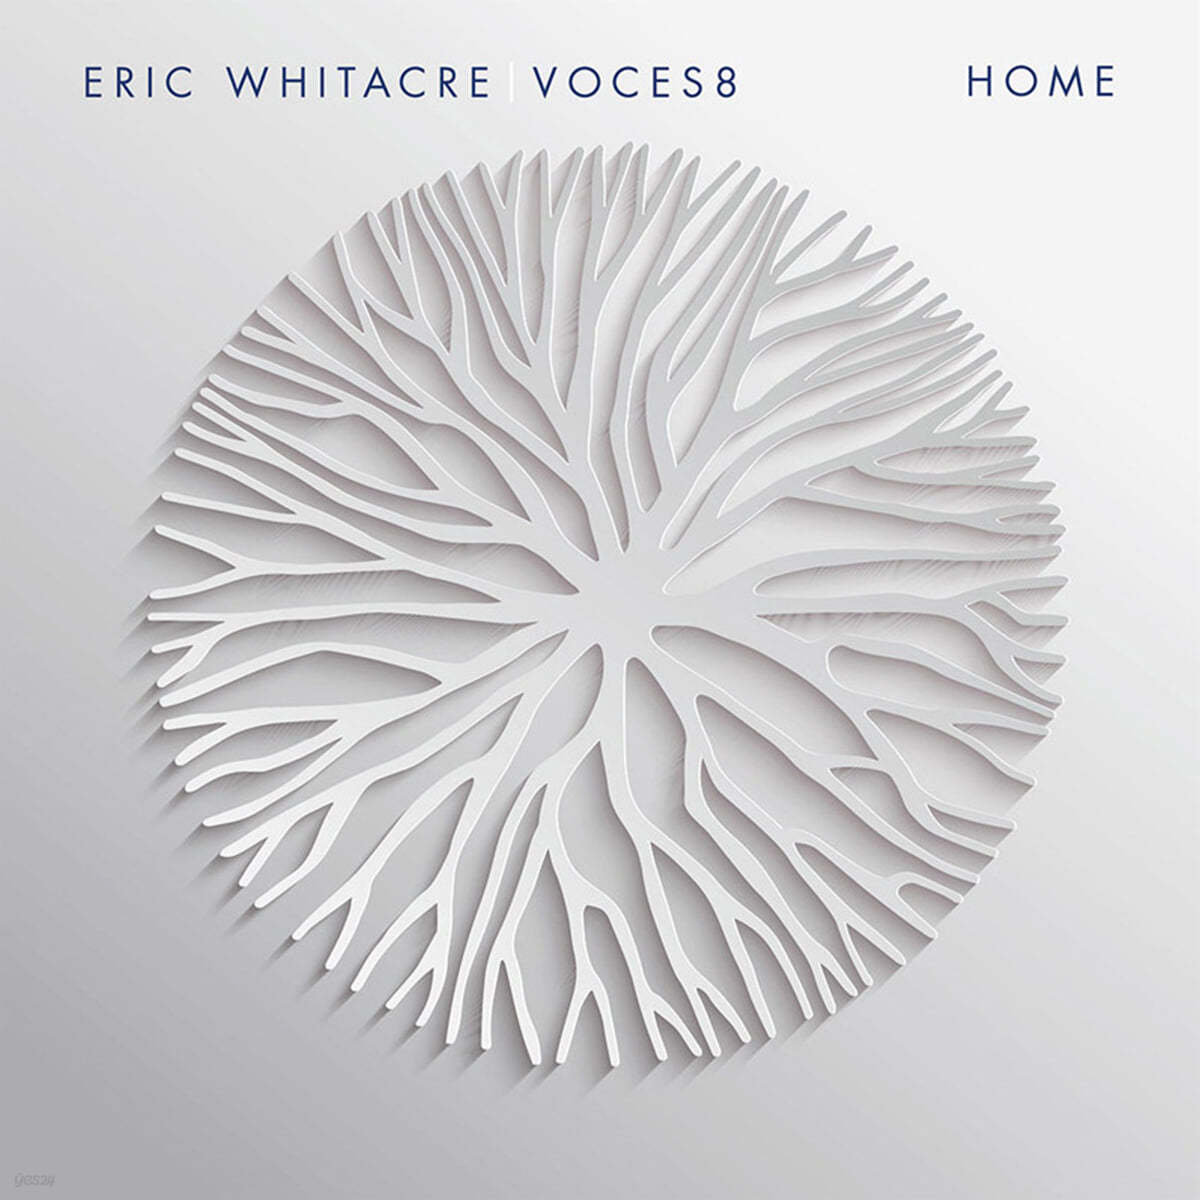 Eric Whitacre 에릭 휘태커 &amp; 보컬 앙상블 보체스8의 프로젝트 앨범 (Home) [2LP]